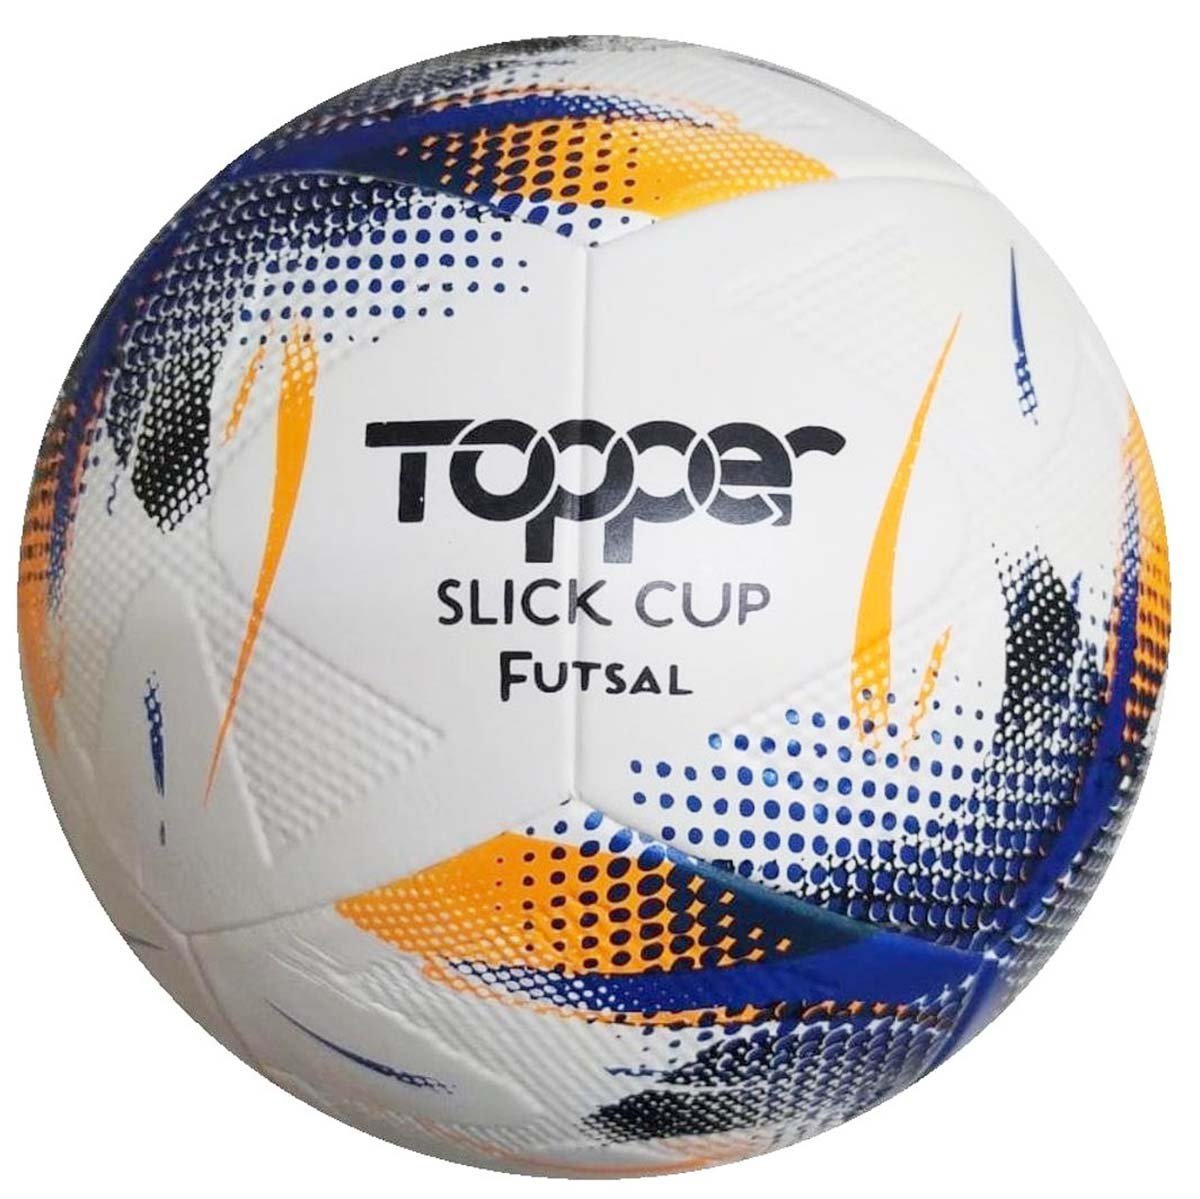 Bola Topper Slick Cup Futsal Tech Fusion - Único - Branco